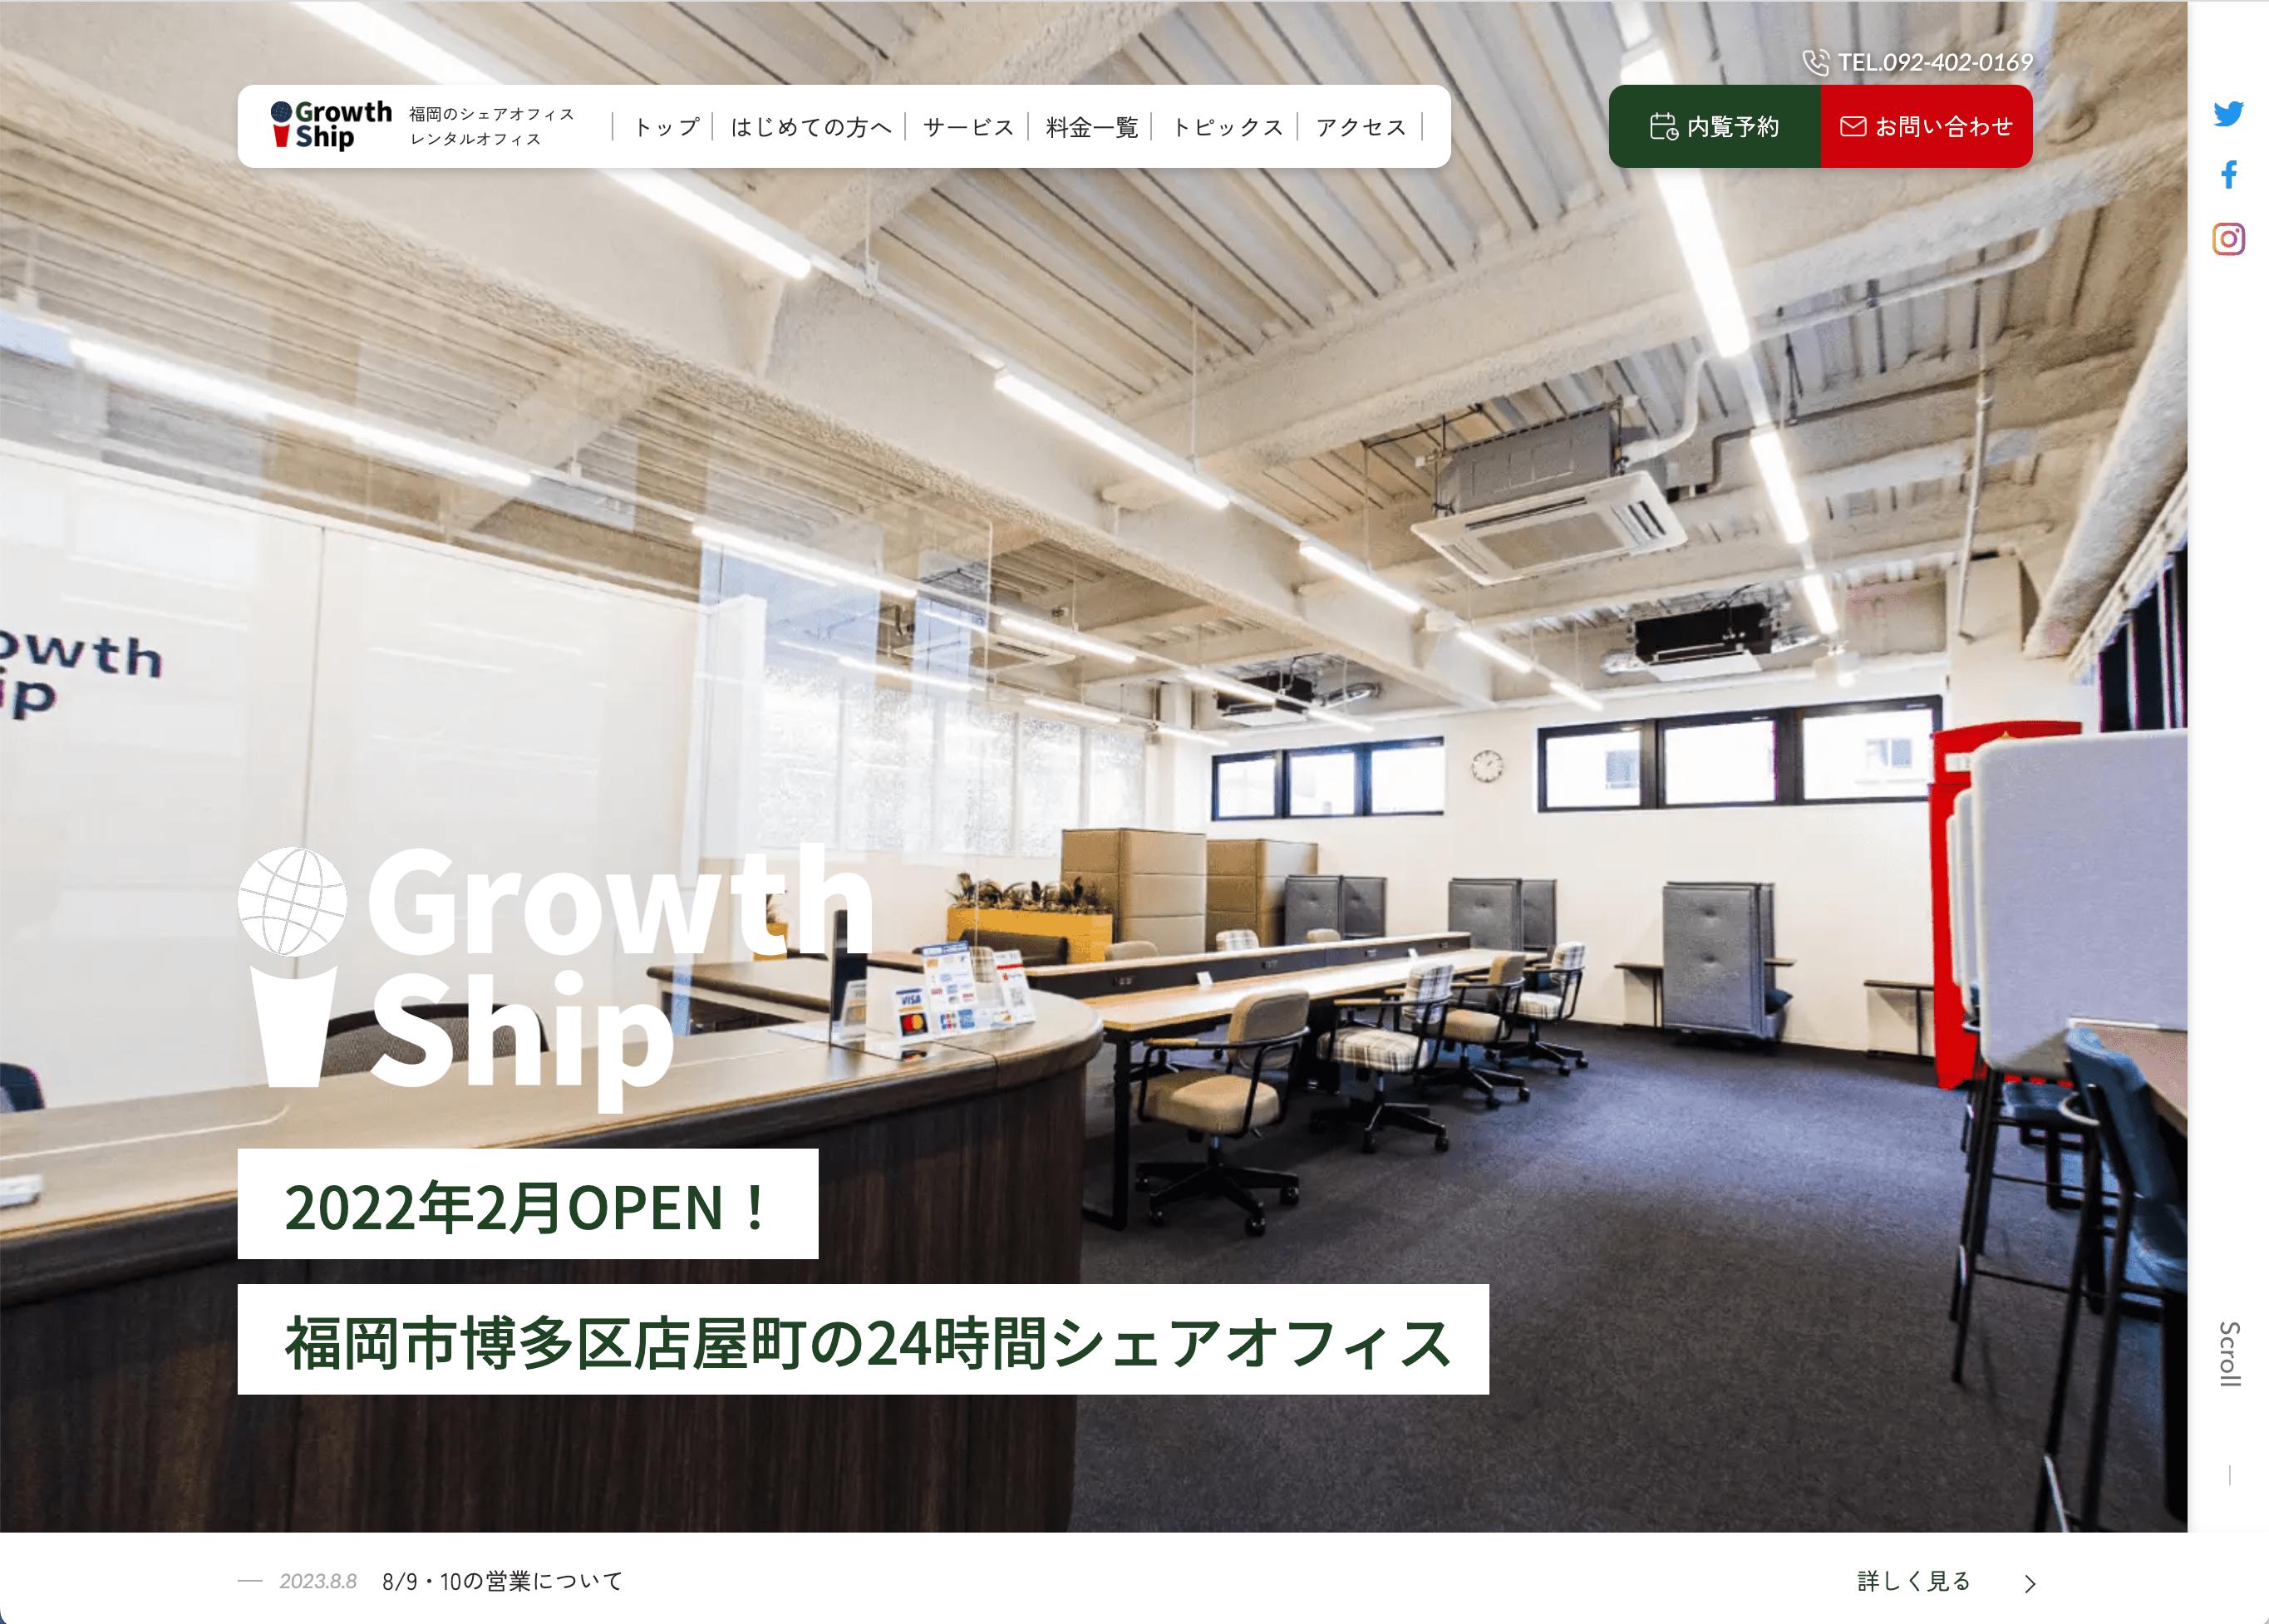 「福岡 シェアオフィス」でSEO上位表示獲得中のホームページ制作